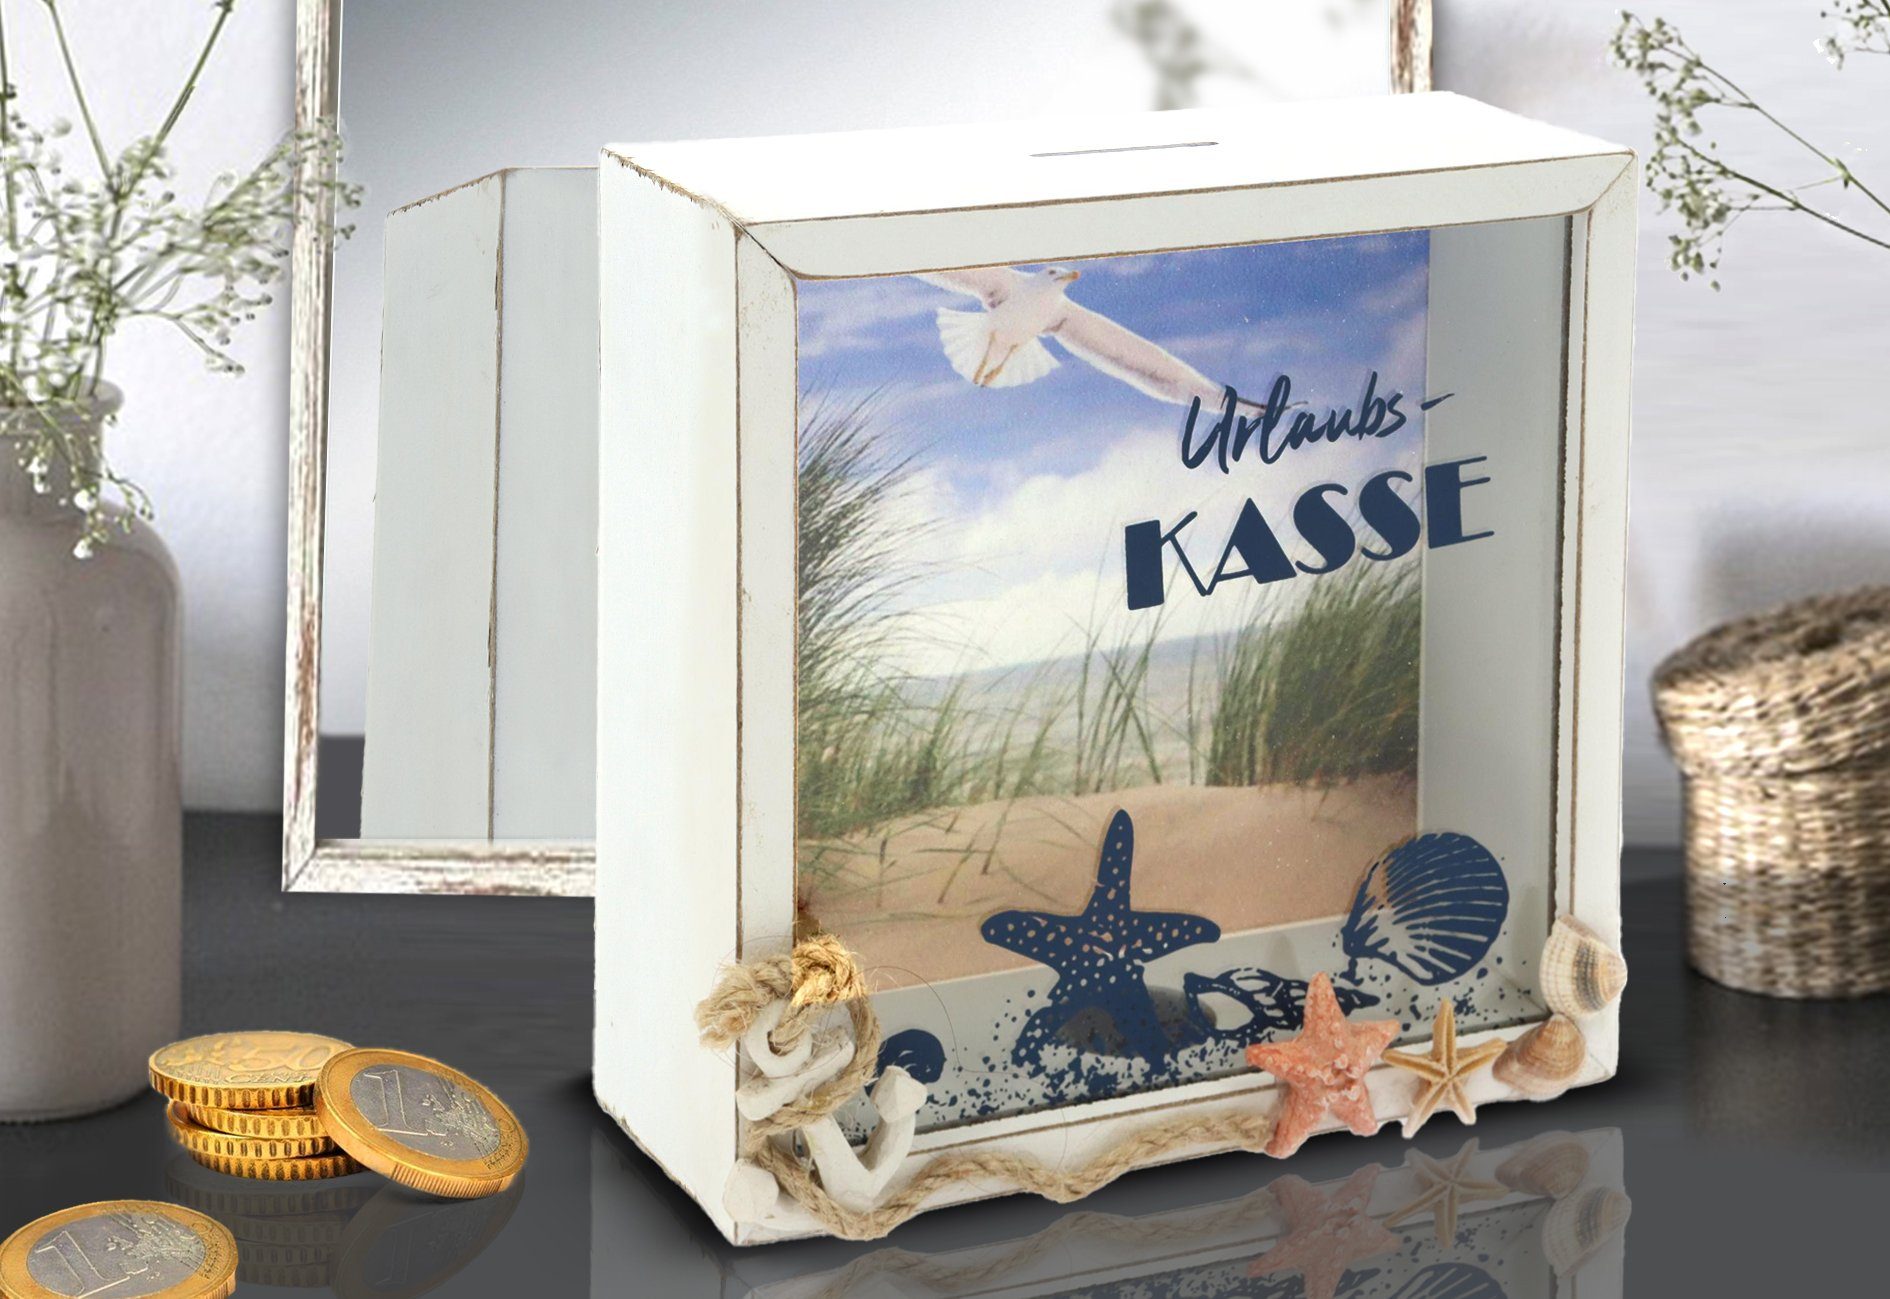 ELLUG Spardose Spardose - Urlaubskasse - Sparbüchse Urlaub Reisekasse  Sparschwein Geldgeschenk aus Holz mit sommerlichen Hintergrund 15*15*6cm,  ideales Geschenk